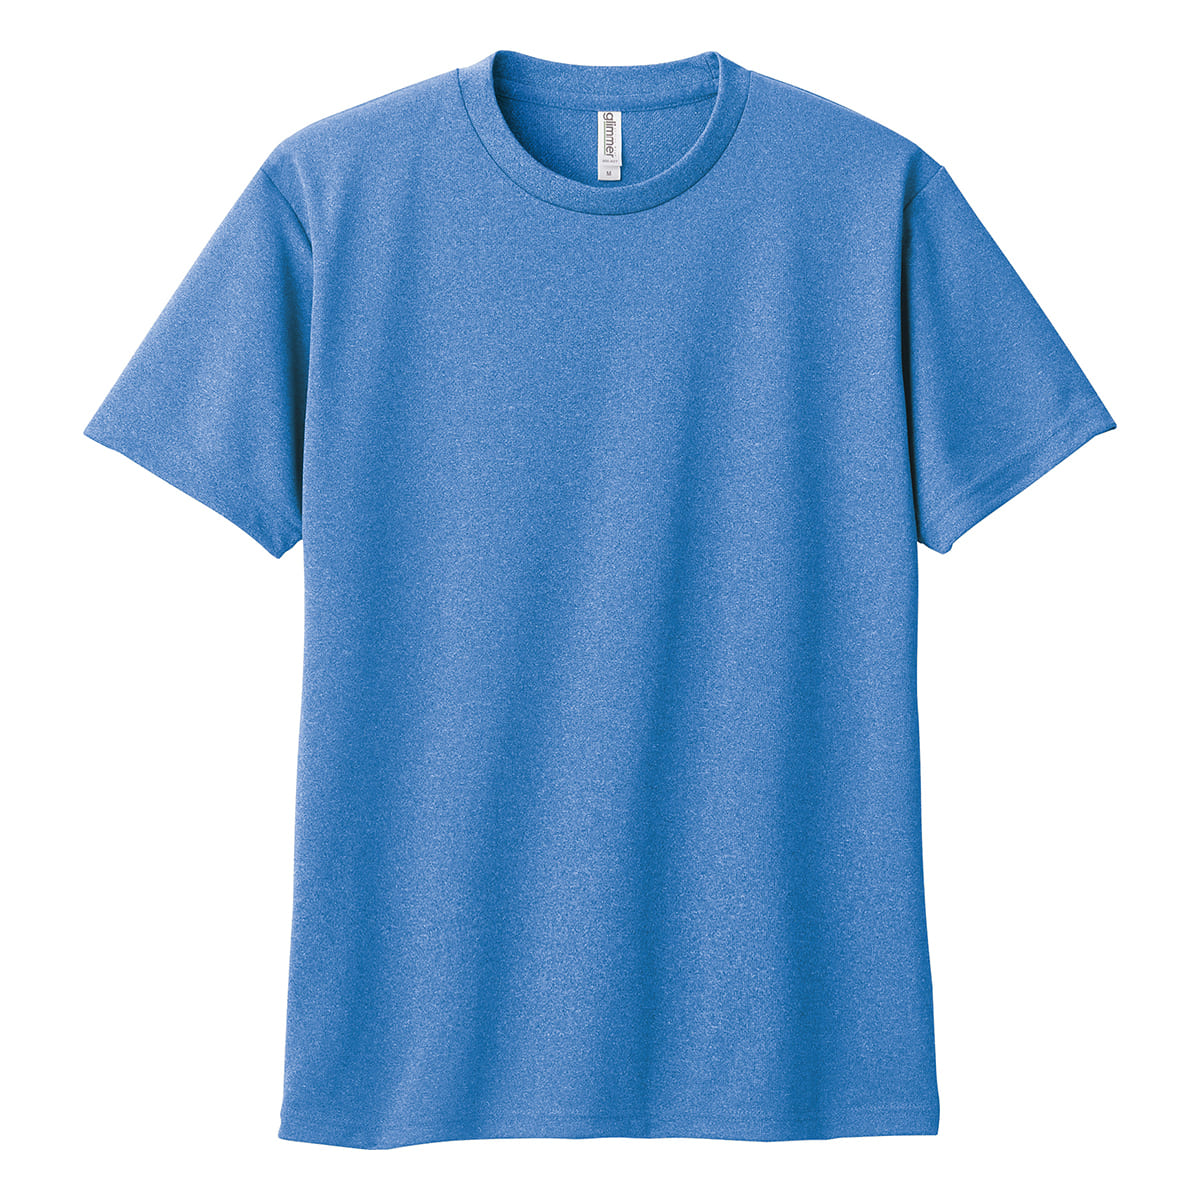 速乾 tシャツ レディース GLIMMER グリマー 4.4オンス ドライ Tシャツ 00300-A...